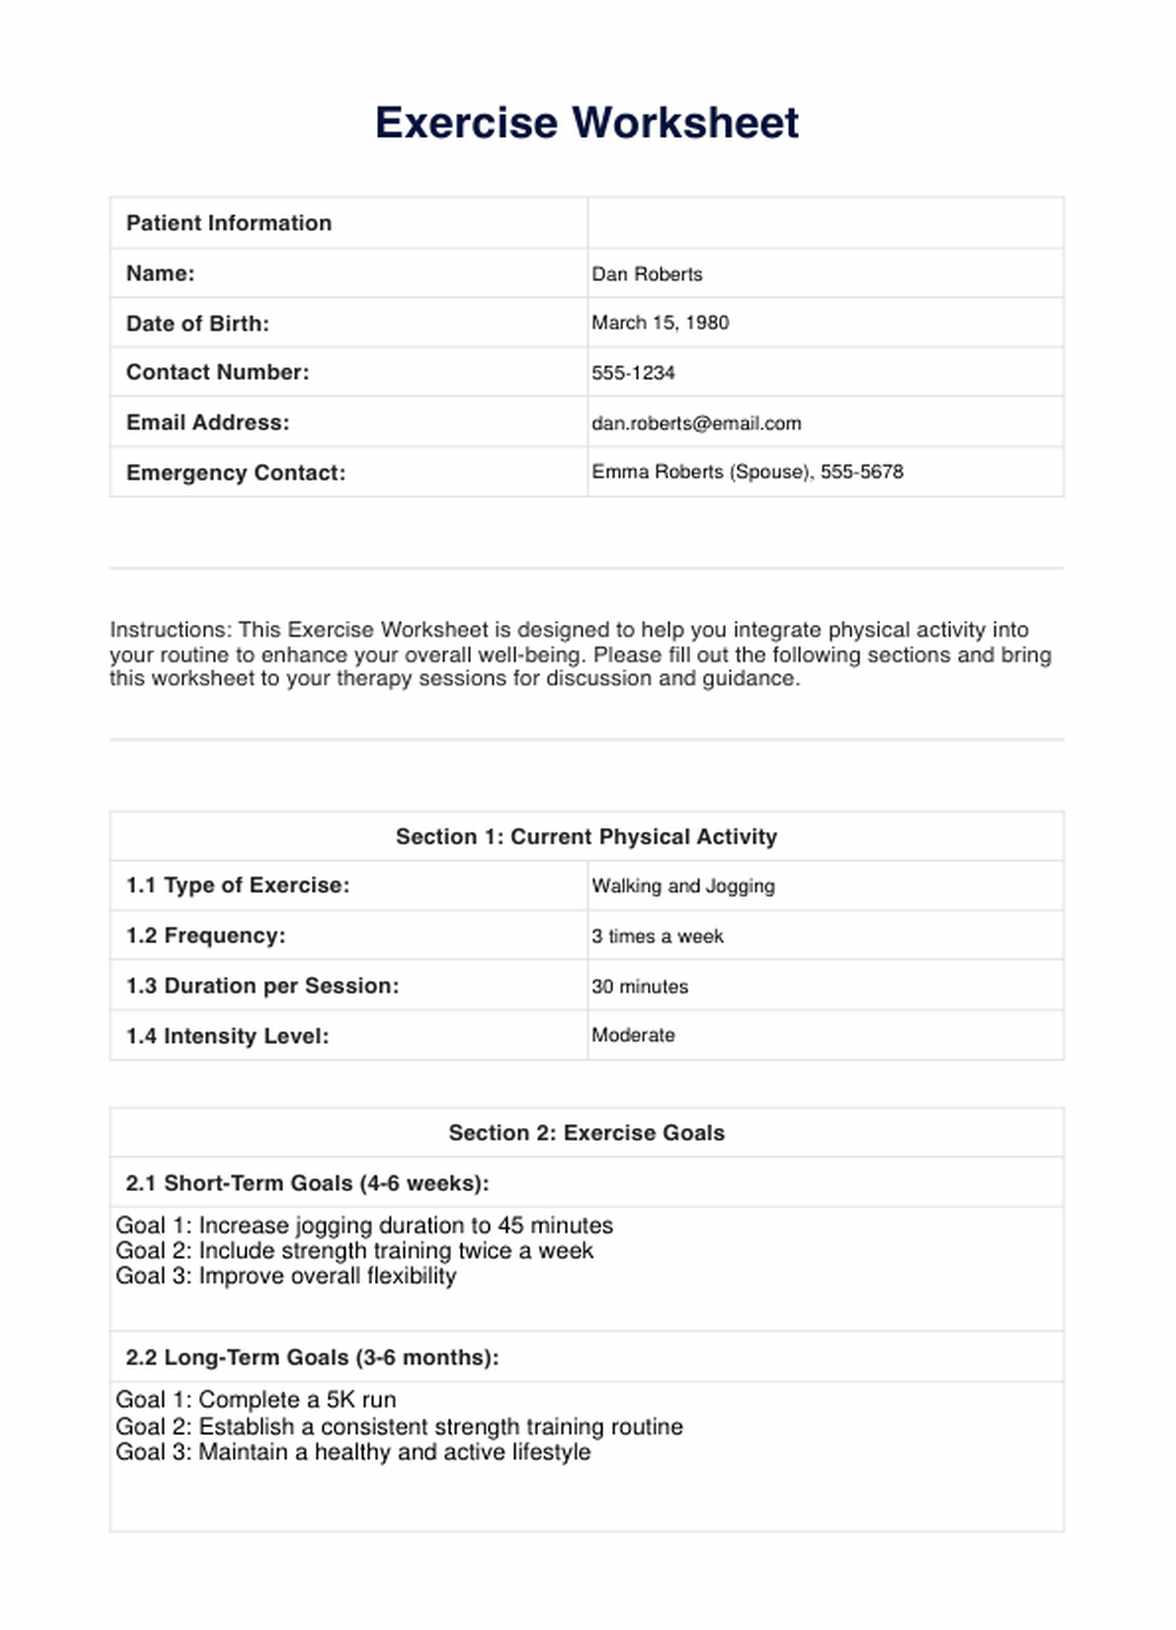 Exercise Worksheet PDF Example